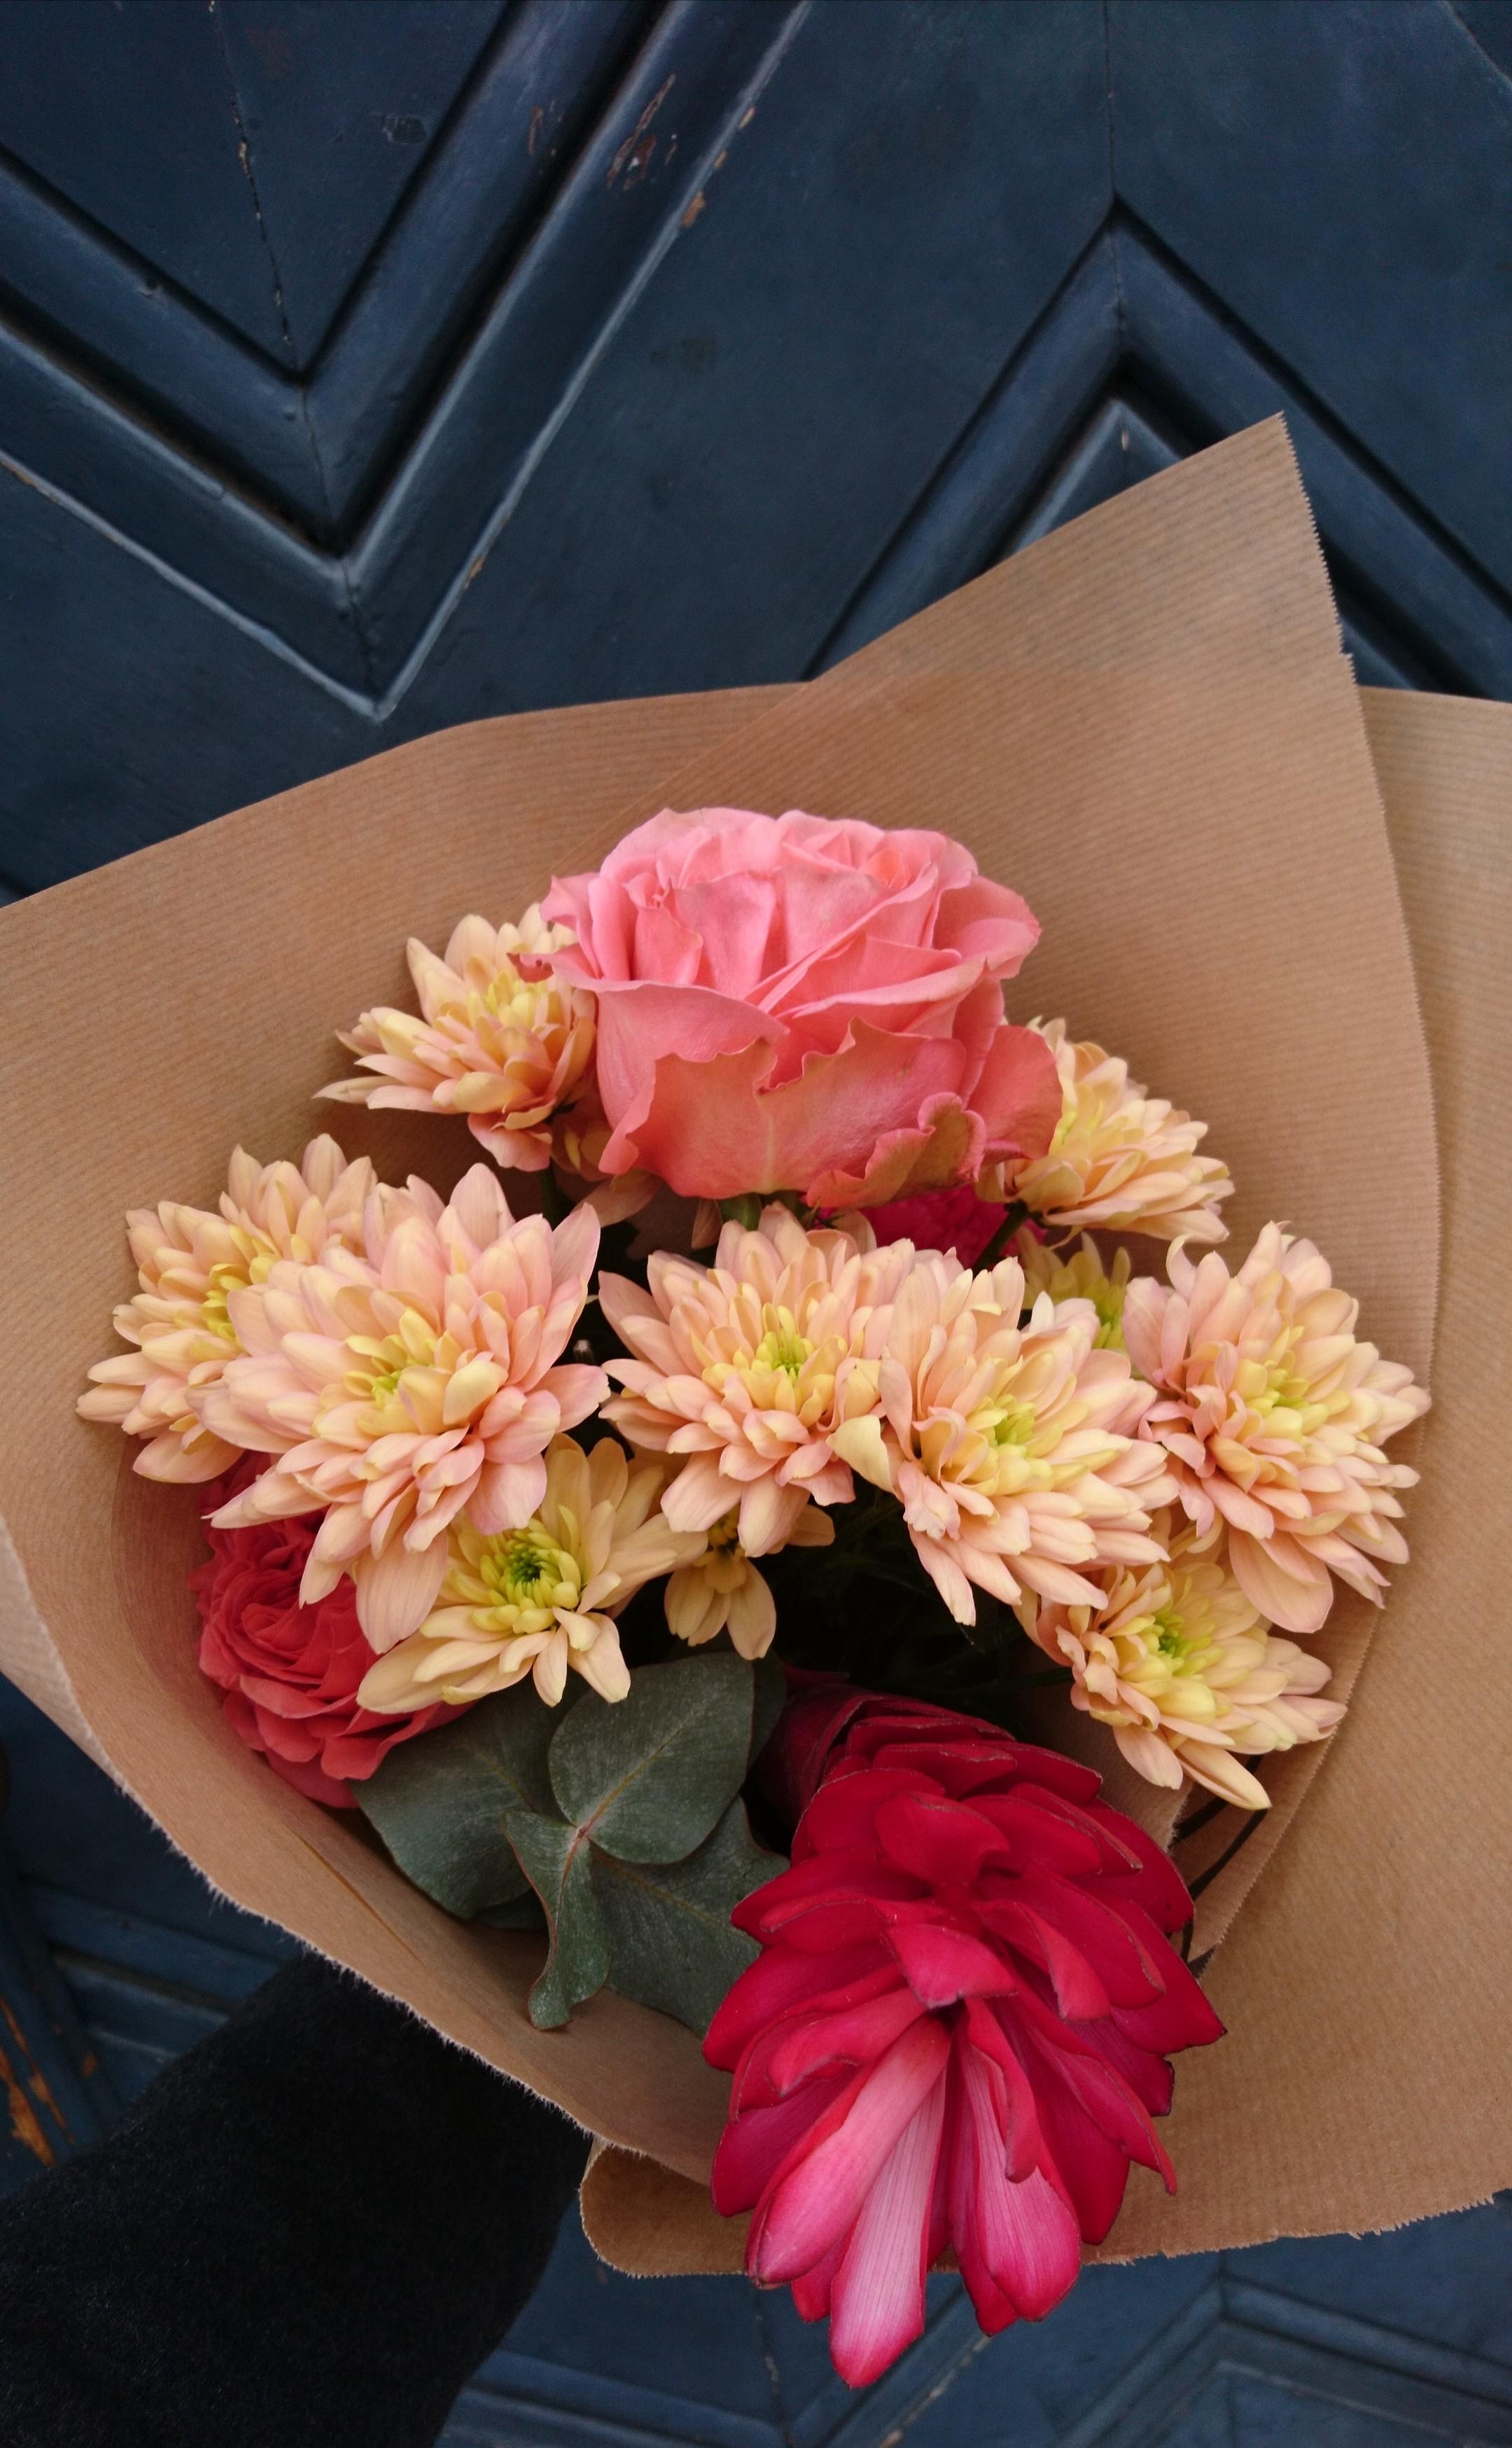 Ich hoffe ihr habt ein wunderschönes Wochenende!
#Blumen #Blumenstrauß #freshflowerfriday #lieblingsblume Ingwerblüte